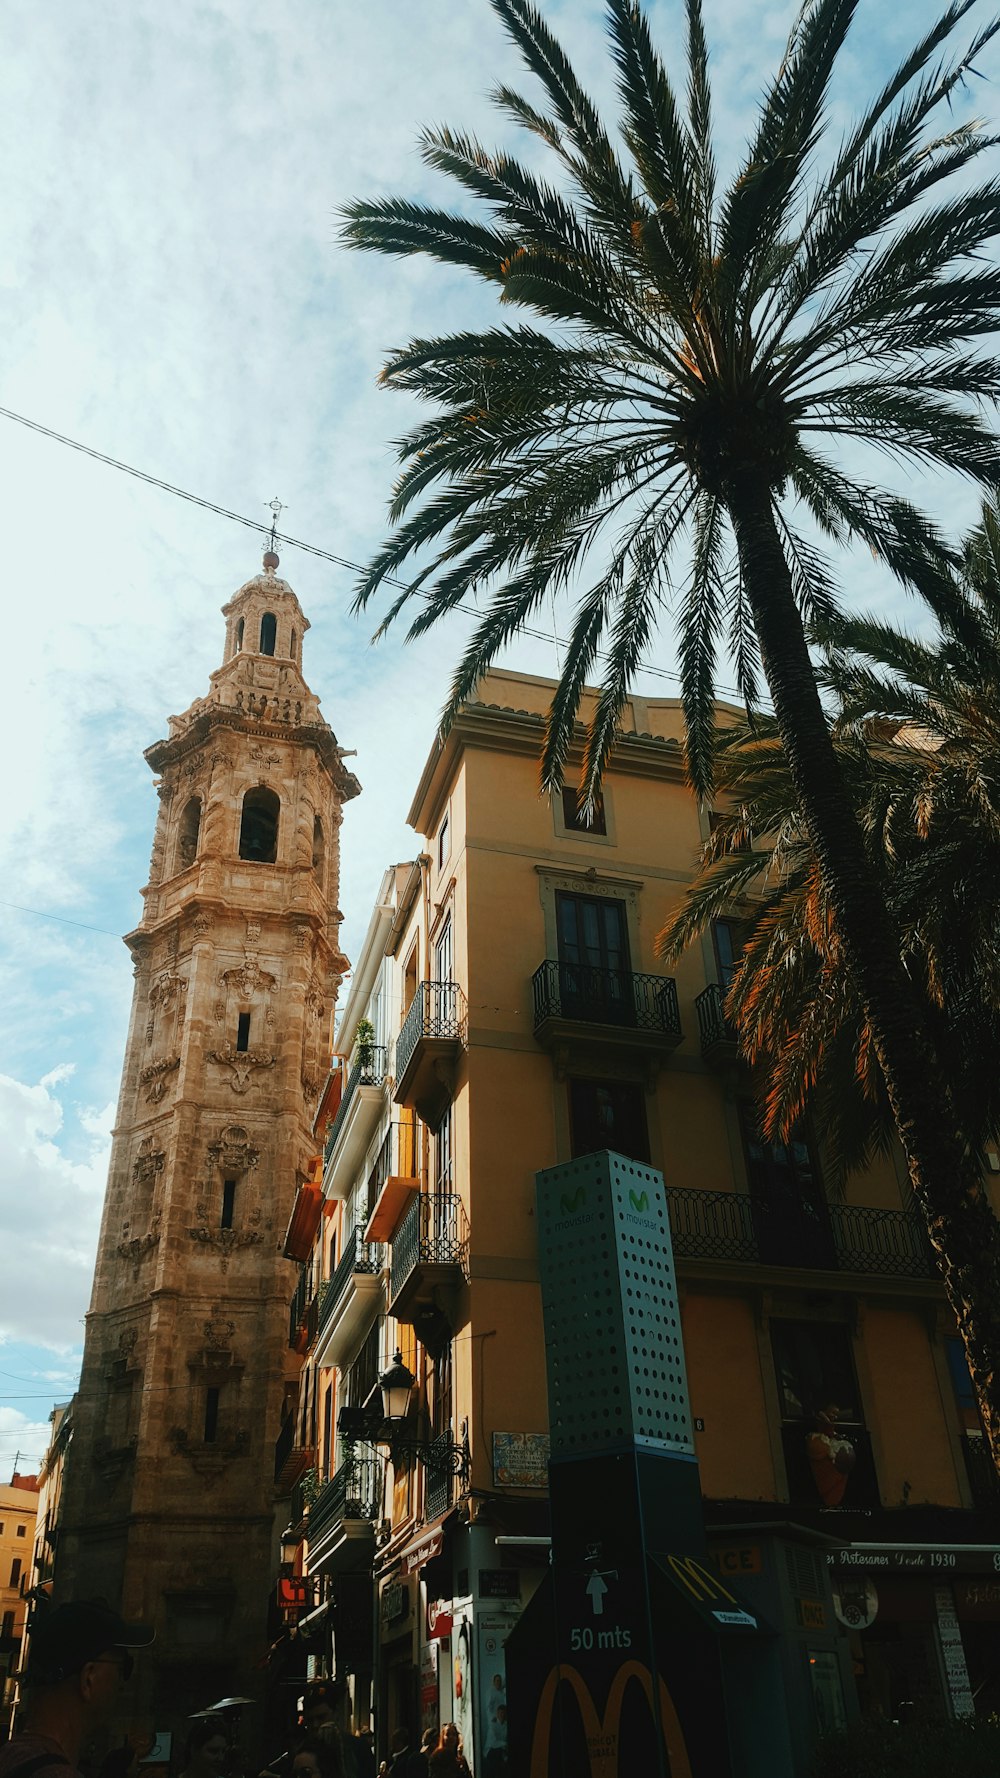 Una alta torre del reloj que se eleva sobre una ciudad